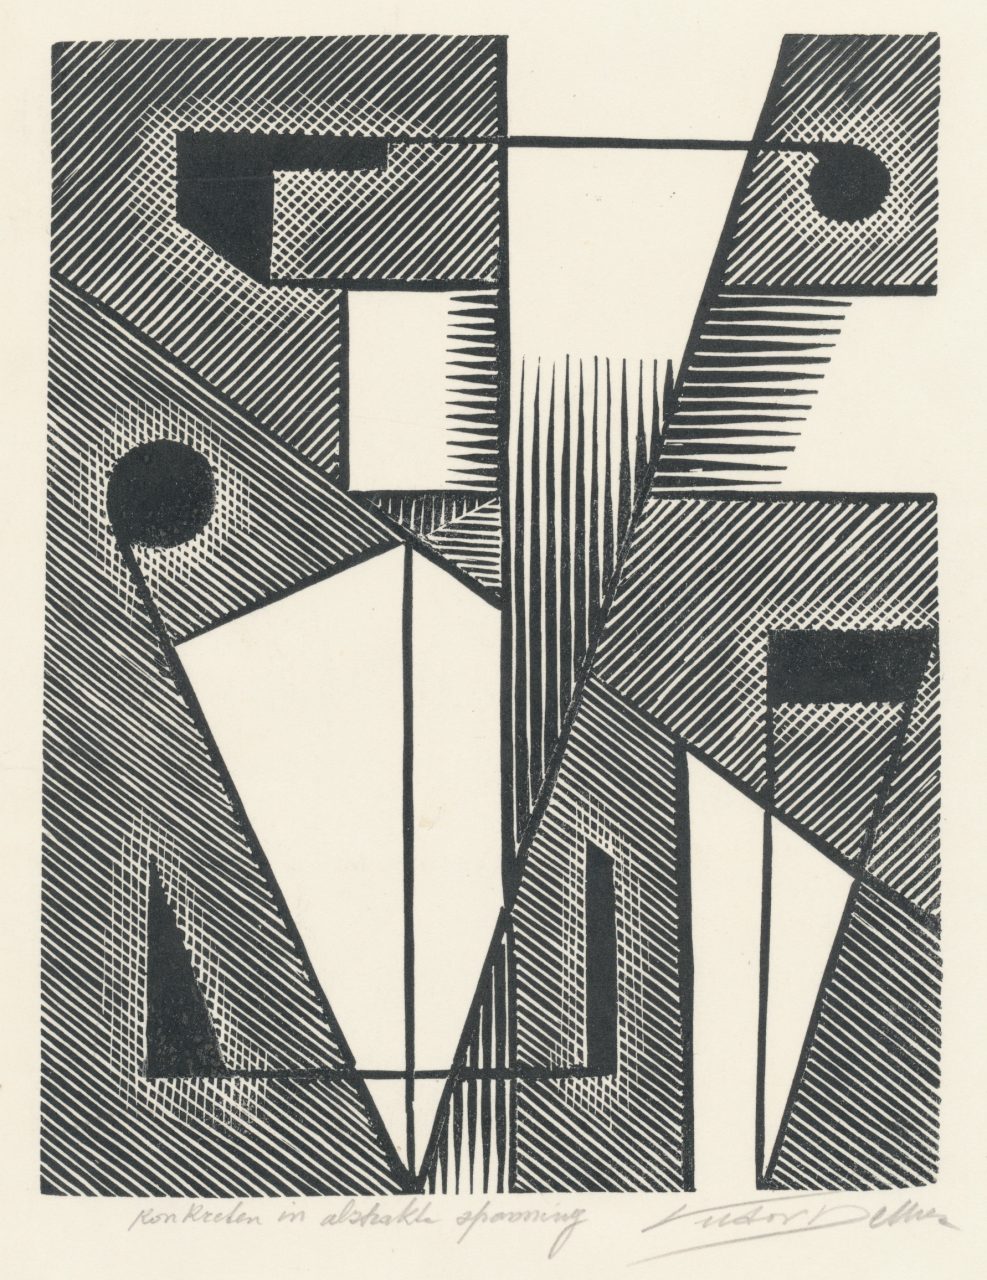 Victor Delhez, Konkreten in abstrakte spanning 02